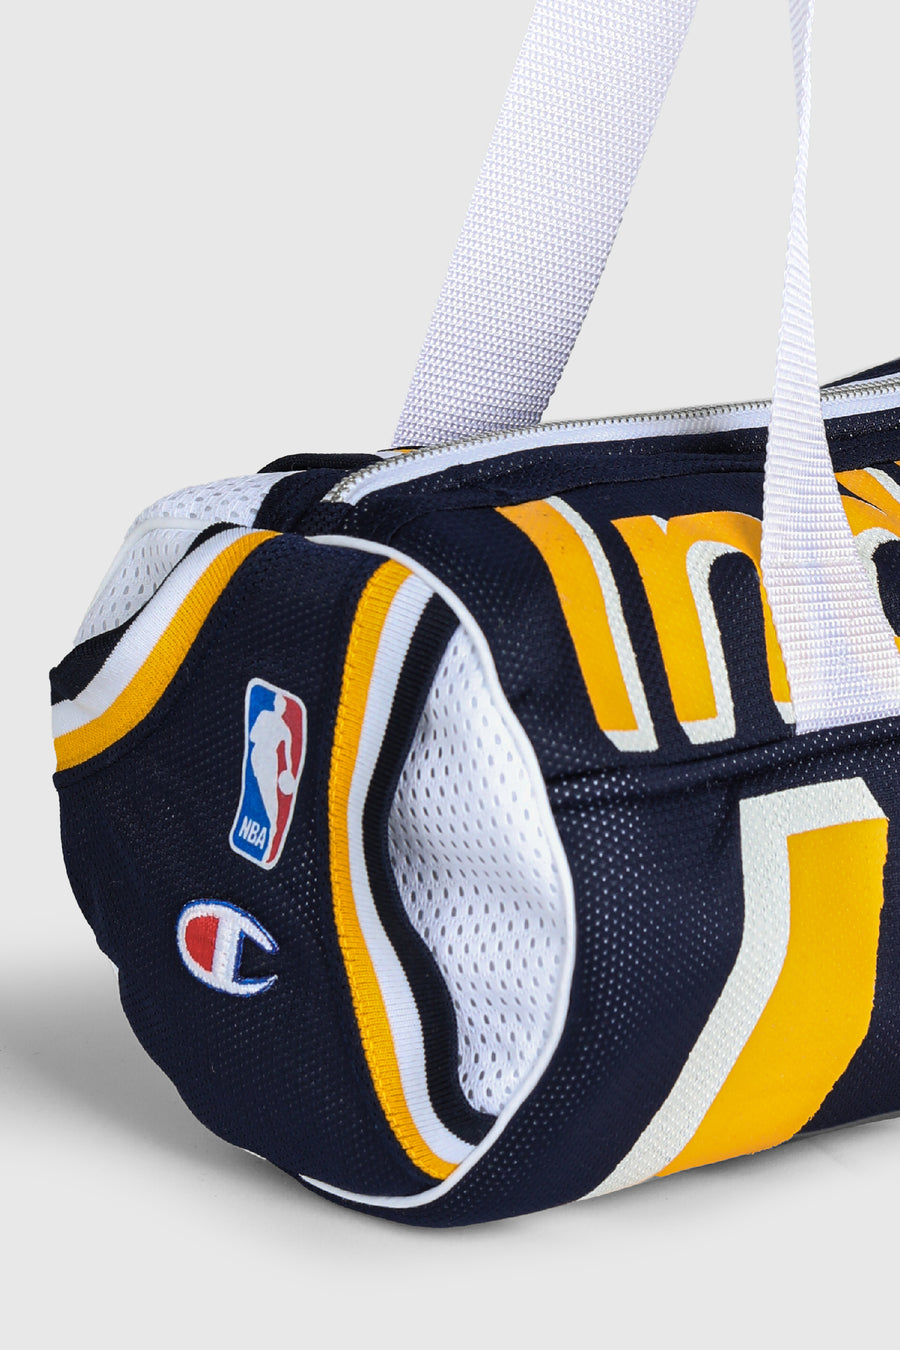 Rework Pacers NBA Duffle Bag